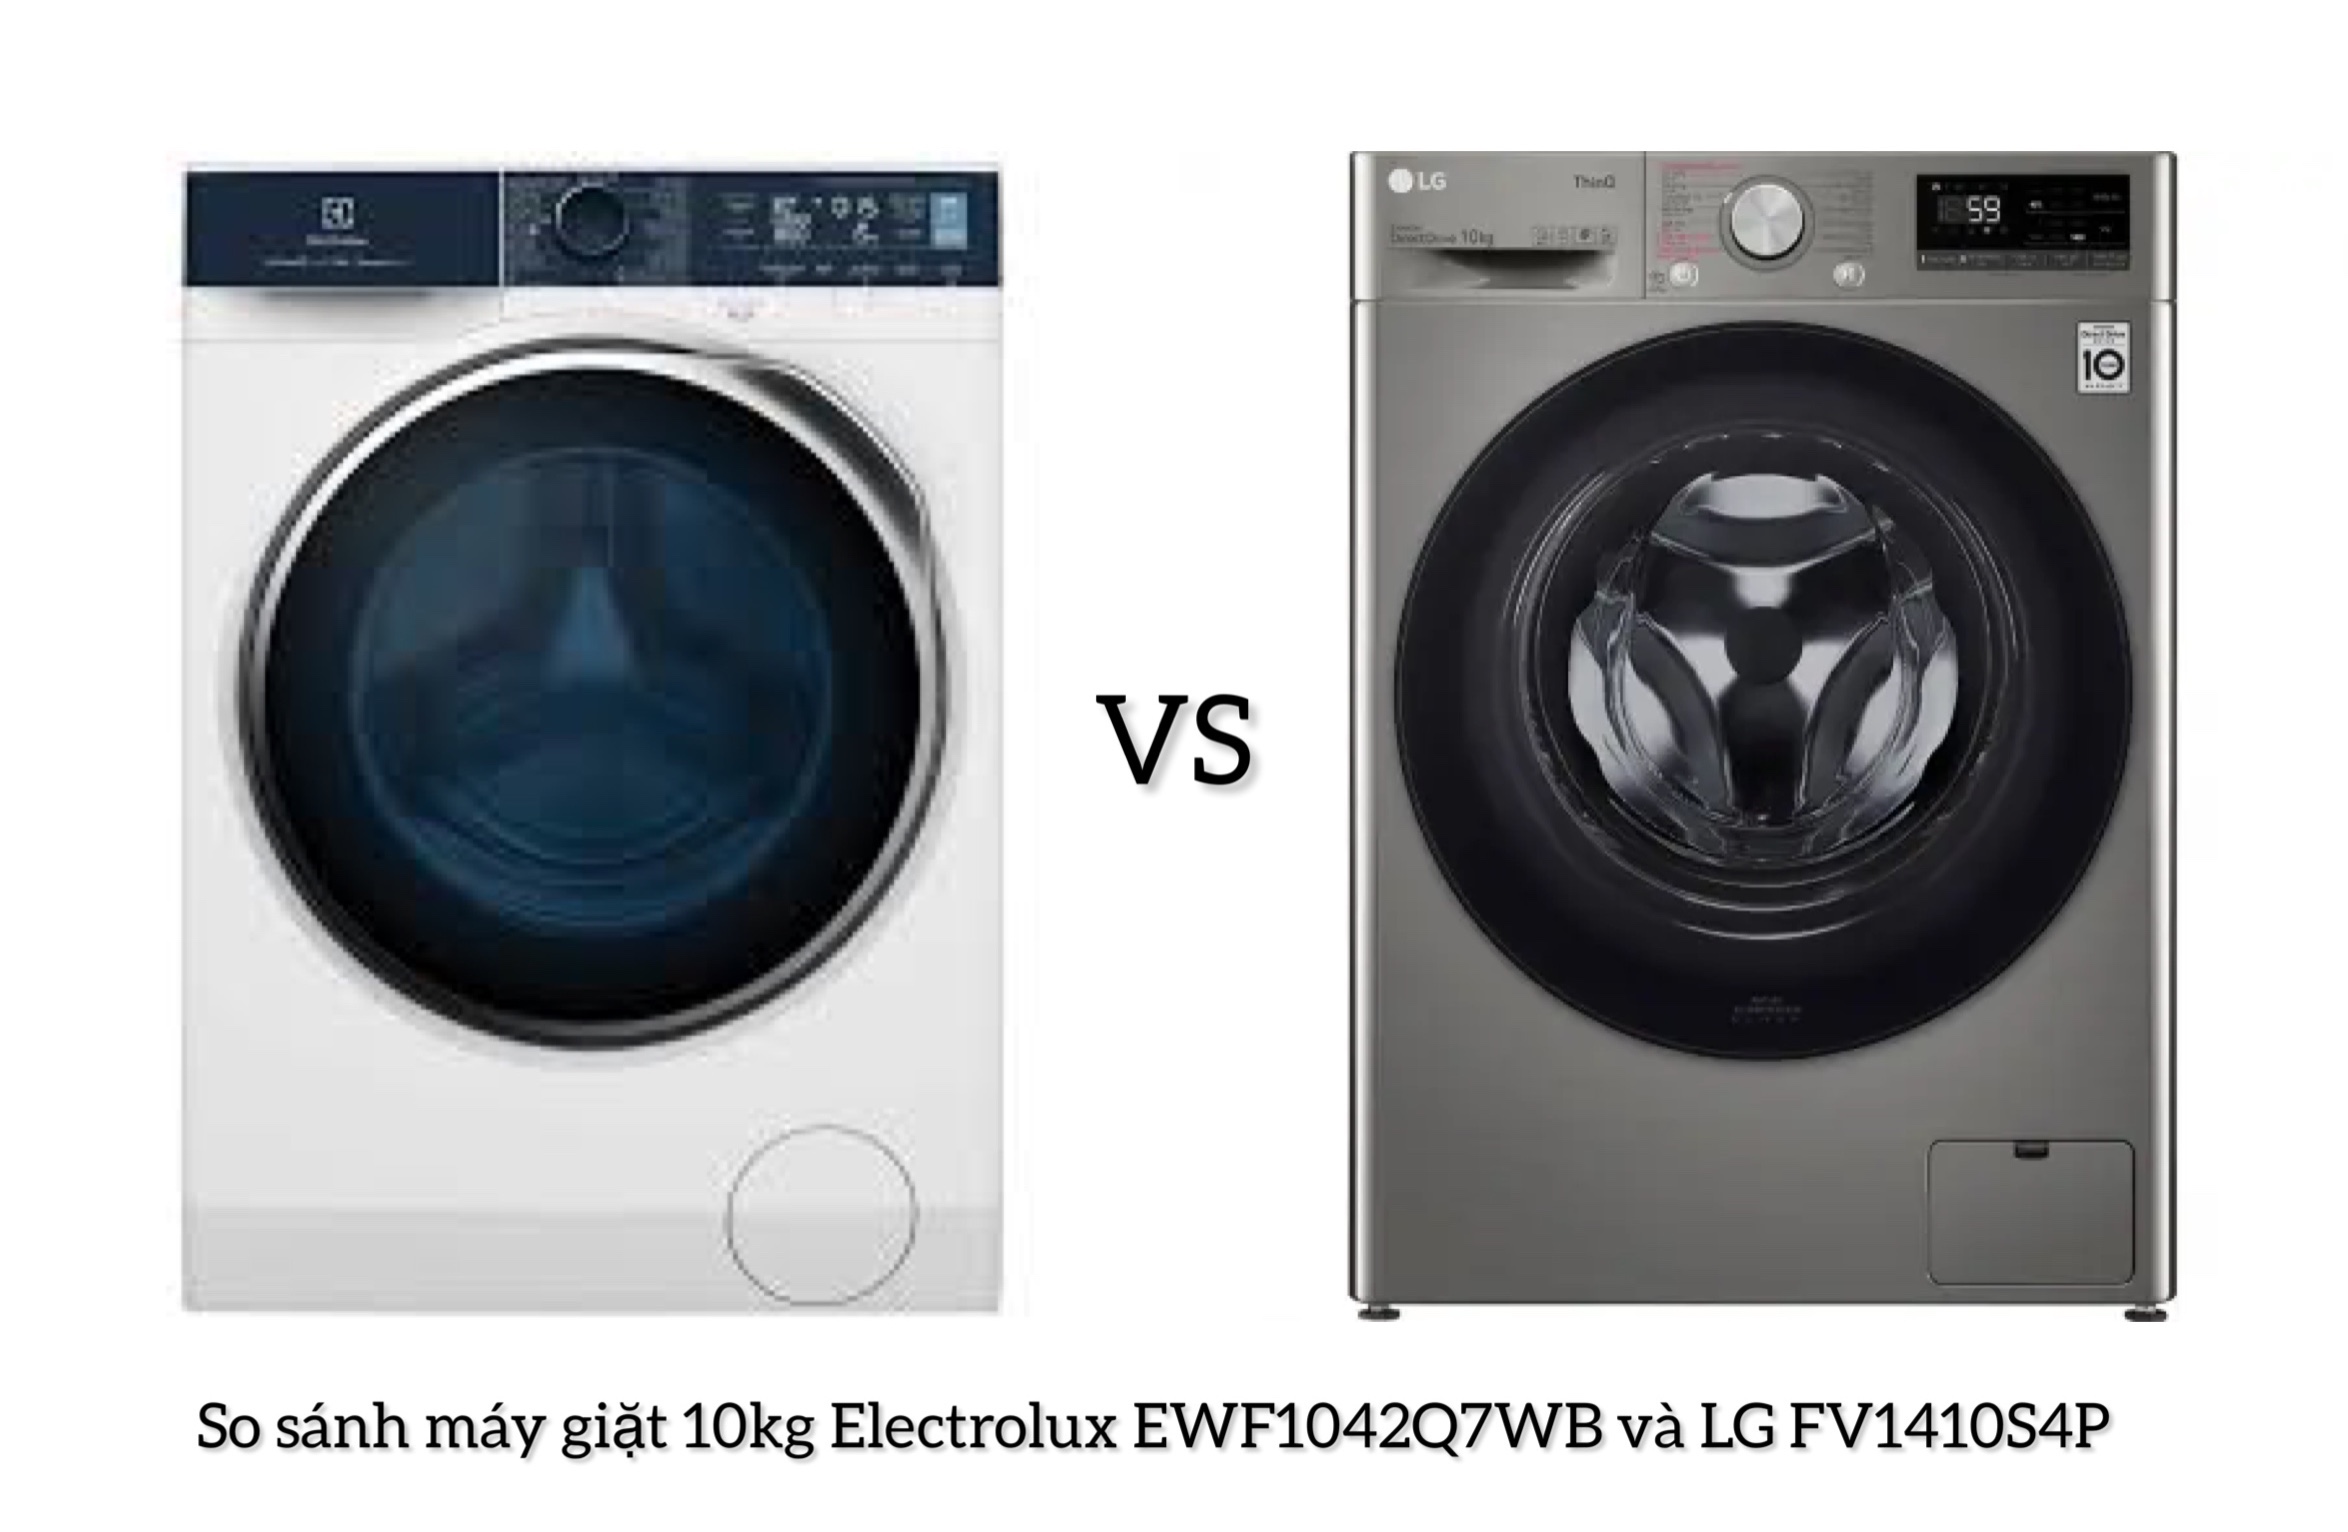 So sánh máy giặt 10kg Electrolux EWF1042Q7WB và LG FV1410S4P